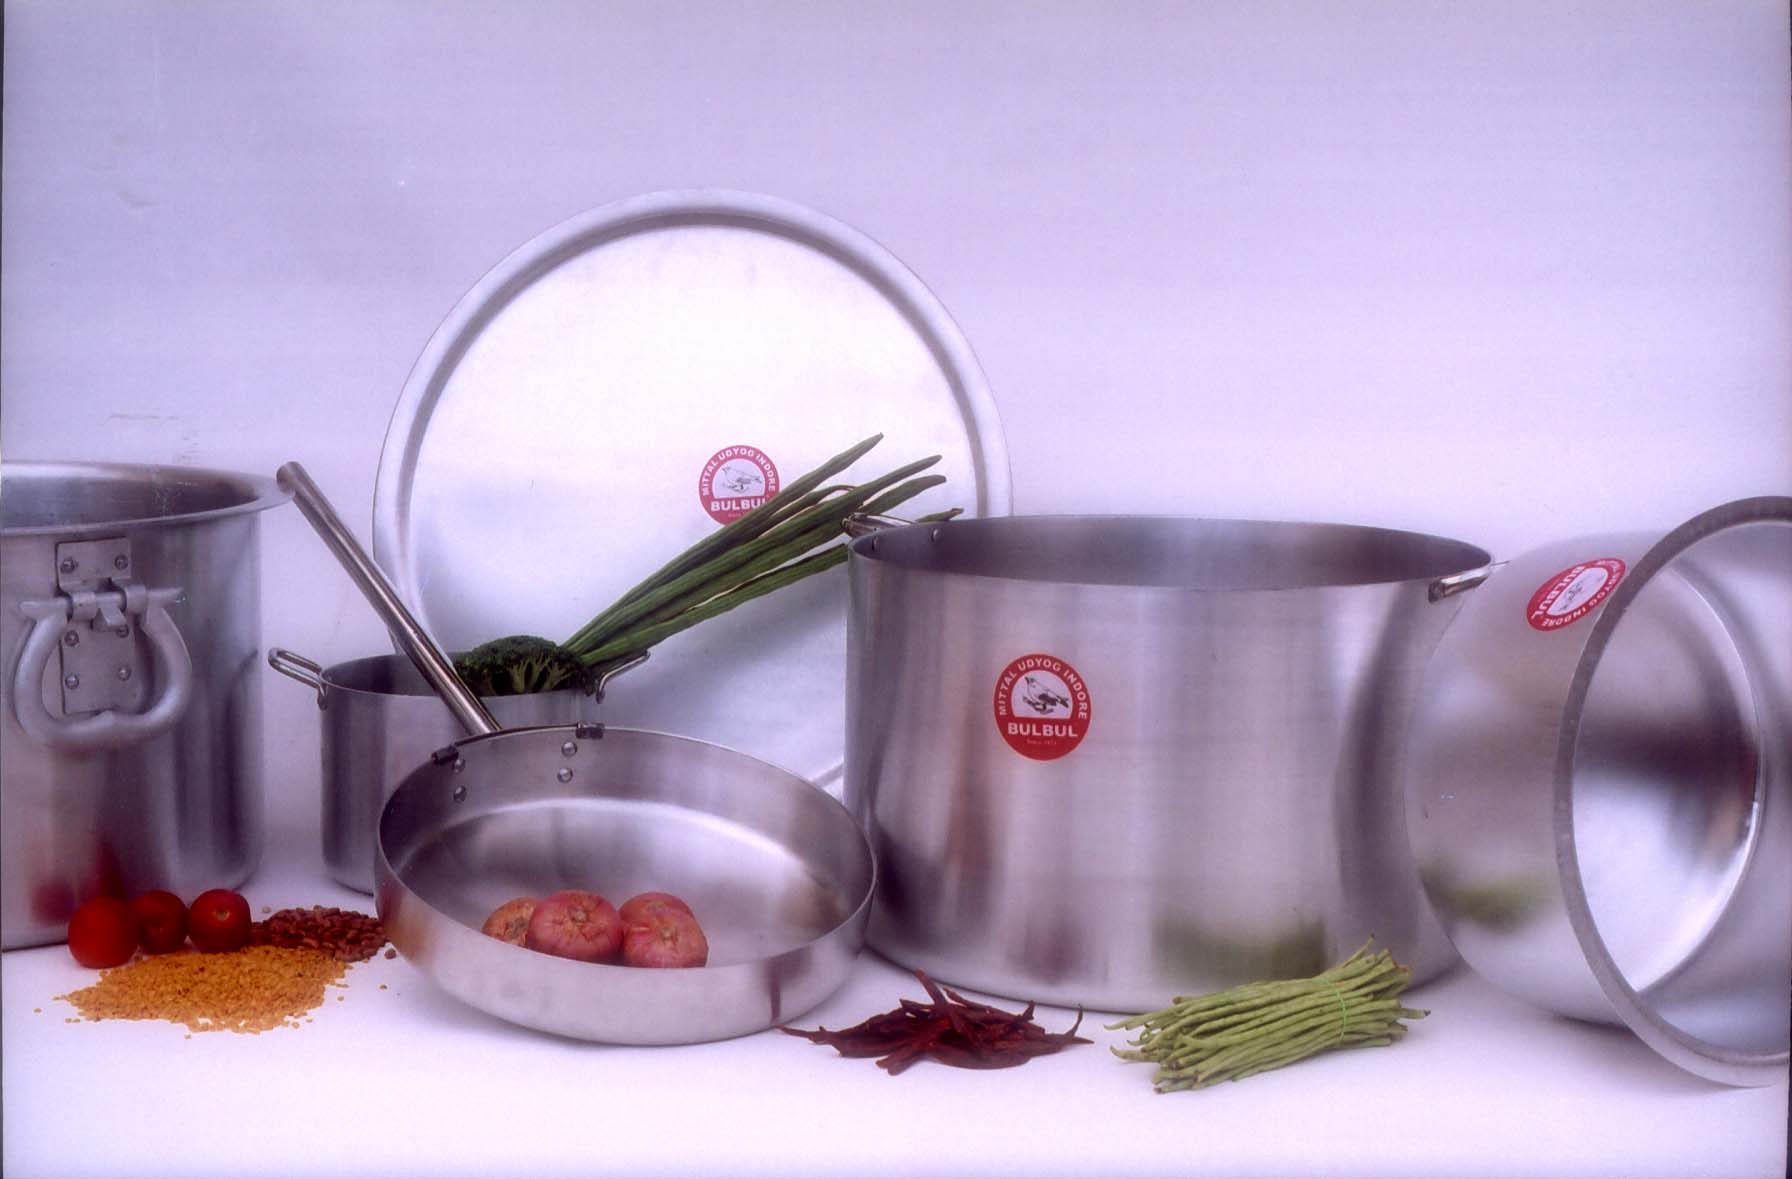 Aluminium cookware & pressure cookers